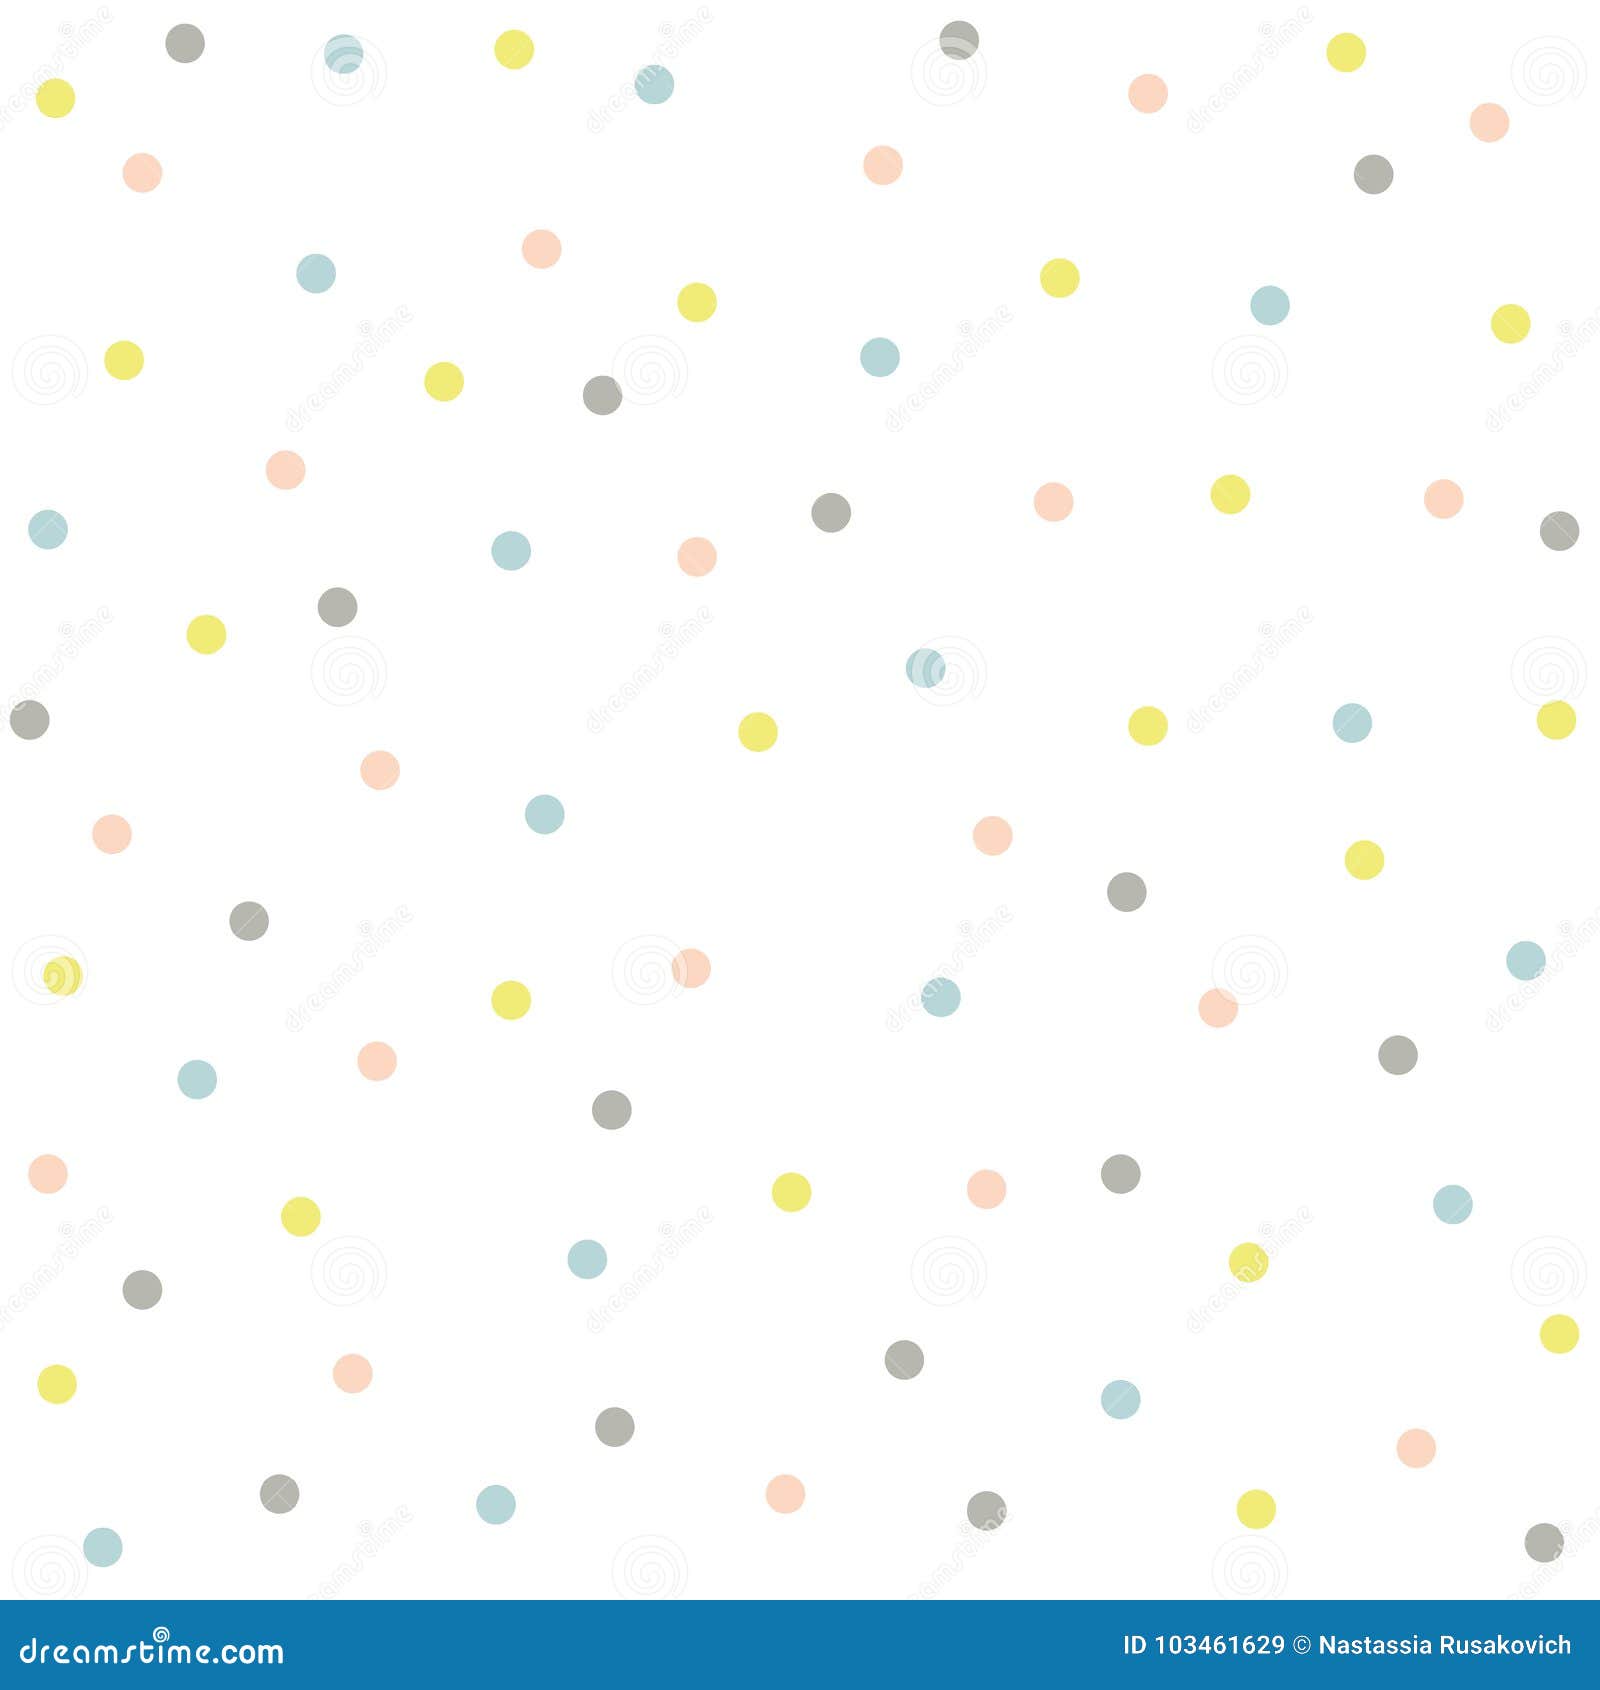 900 Polka Dot Background Images Download HD Backgrounds on Unsplash